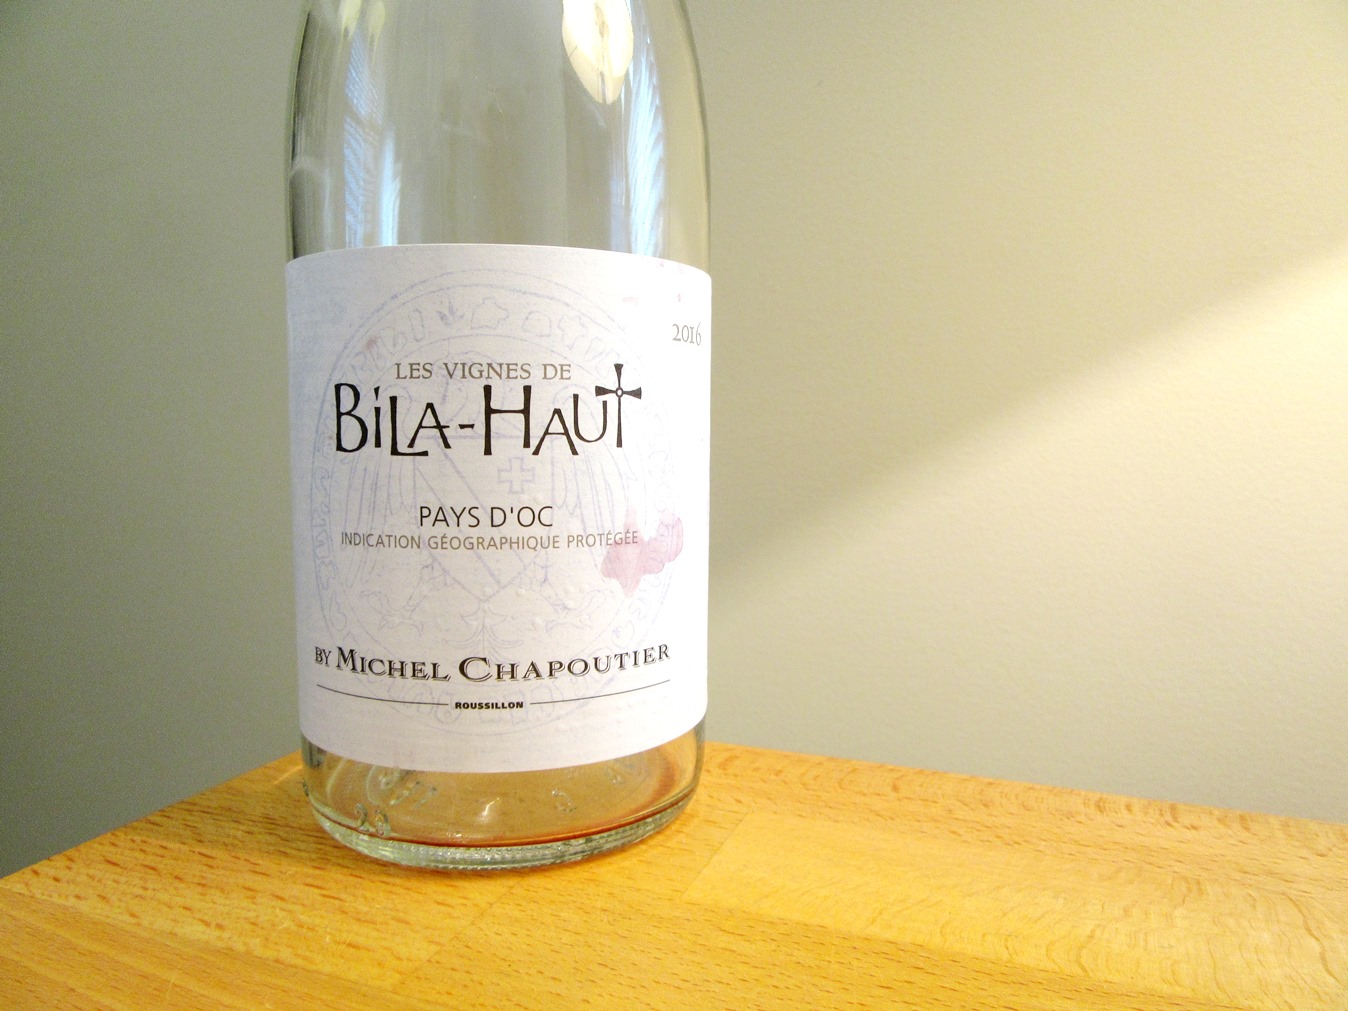 Michel Chapoutier, Les Vignes de Bila-Haut Rosé 2016, IGP Pays D’Oc, France, Wine Casual